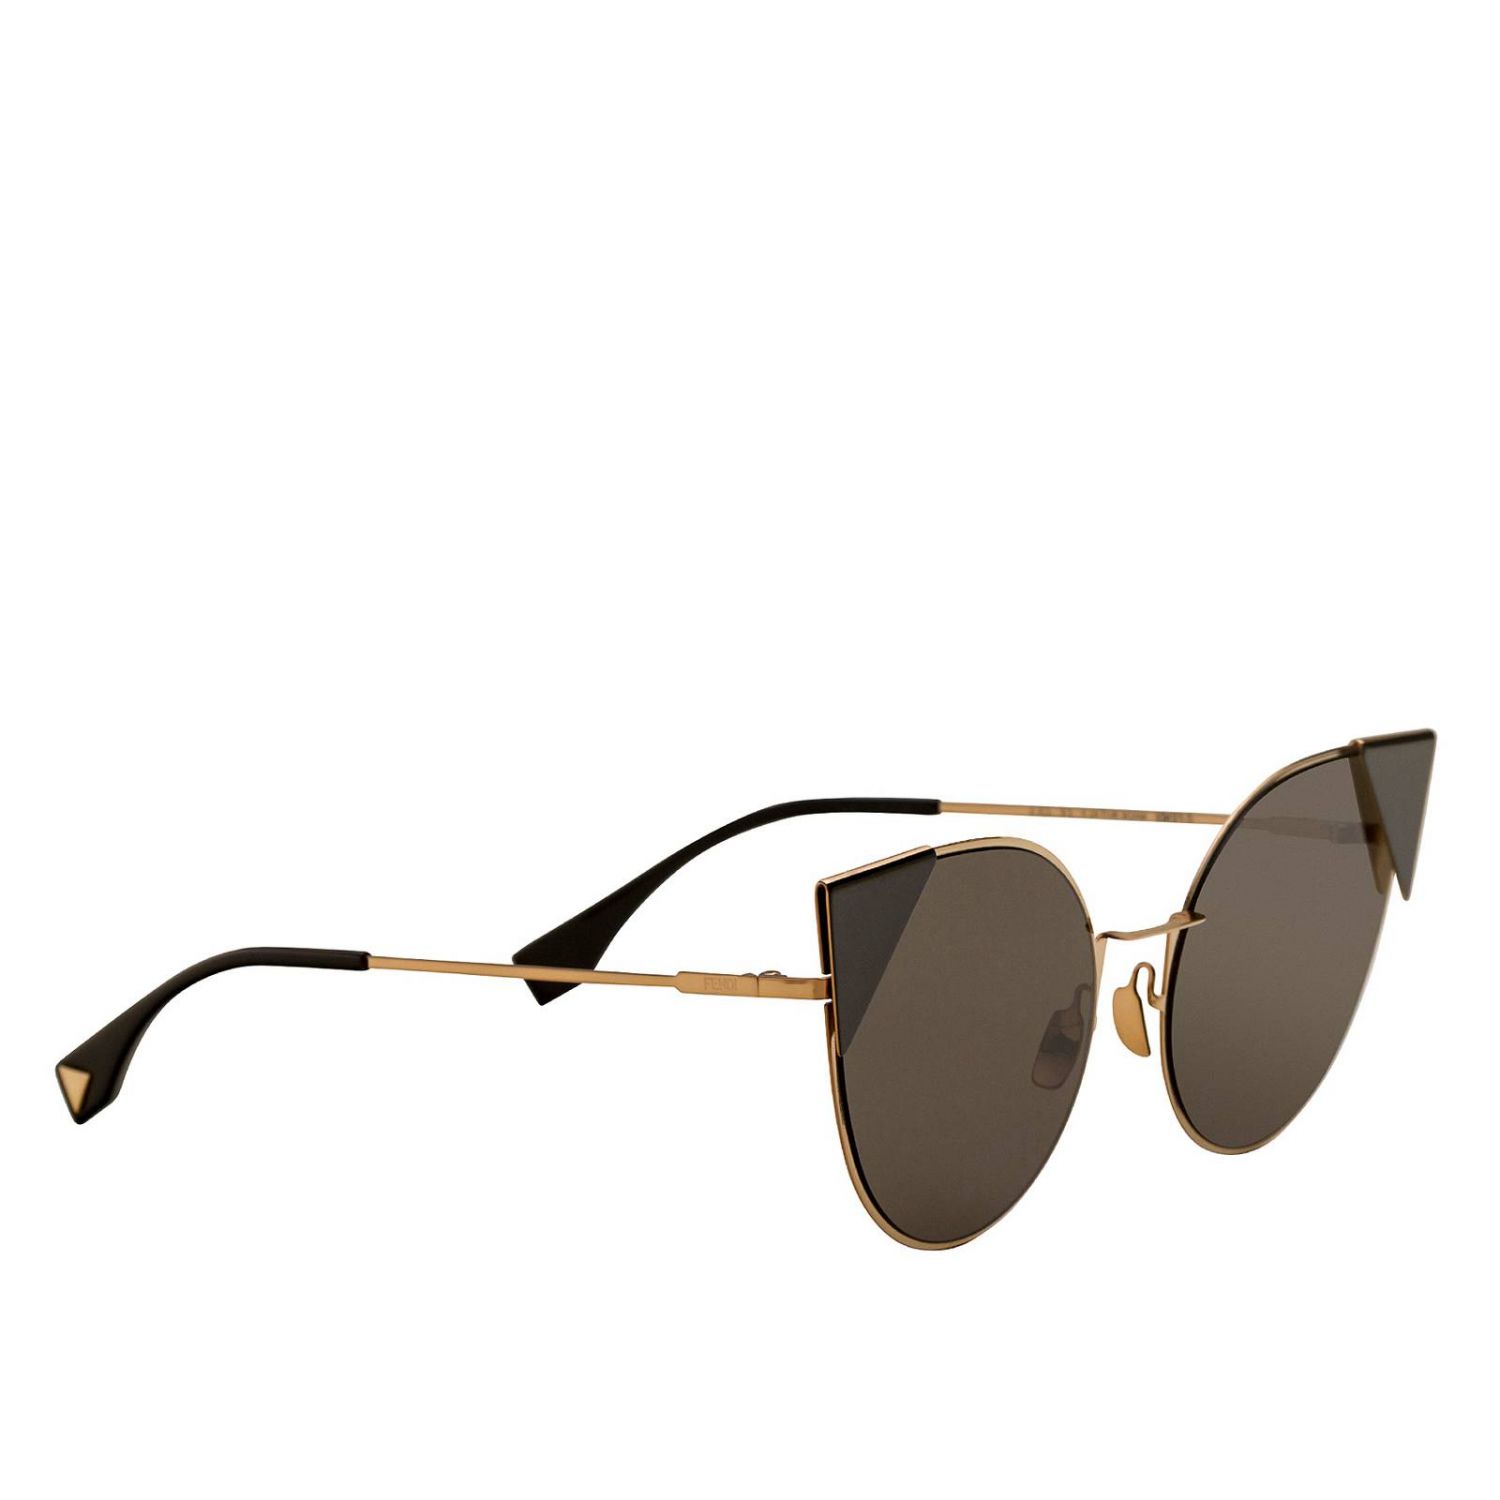 FENDI: Sunglasses women | Glasses Fendi 